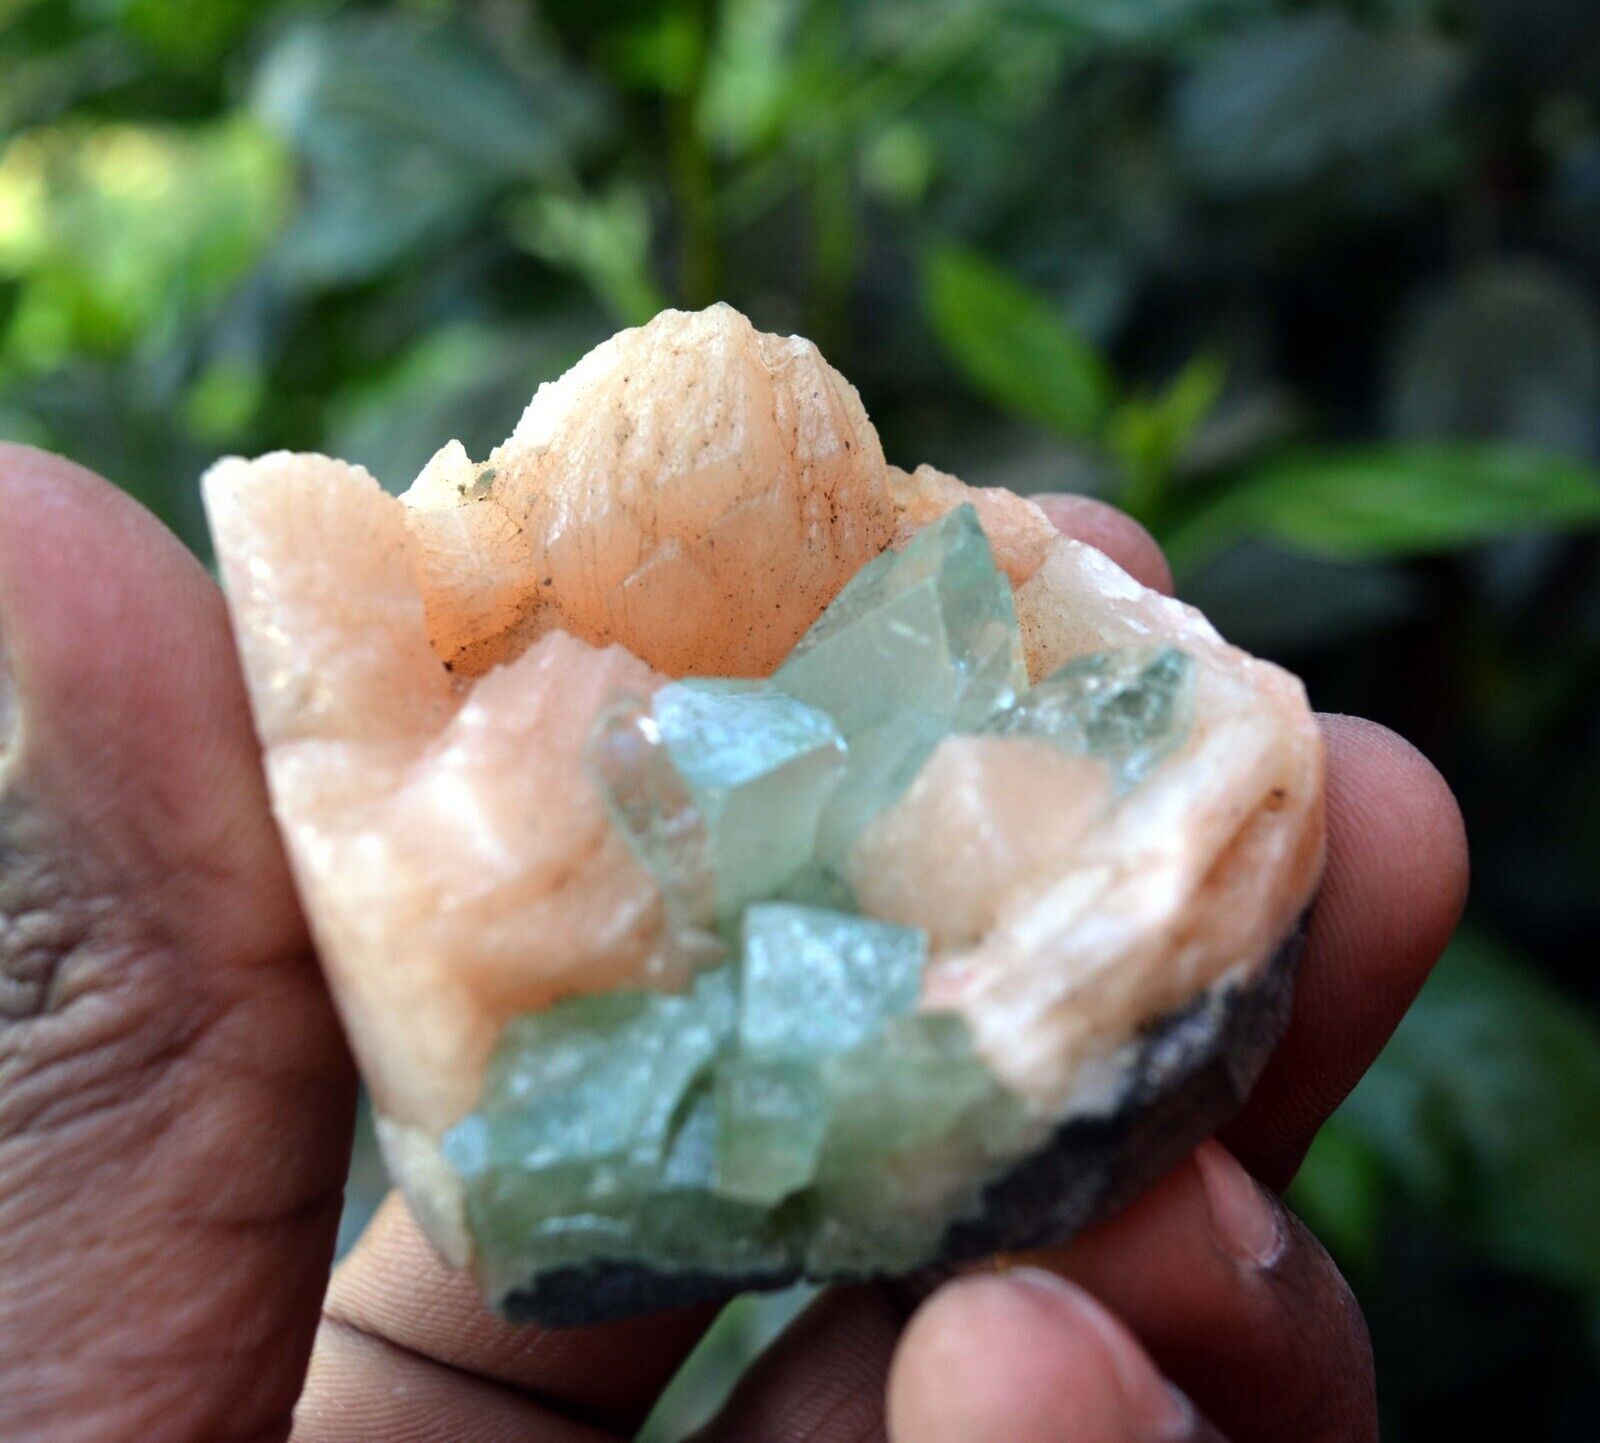 Green APOPHYLLITE On STILBITE Minerals A-4.24